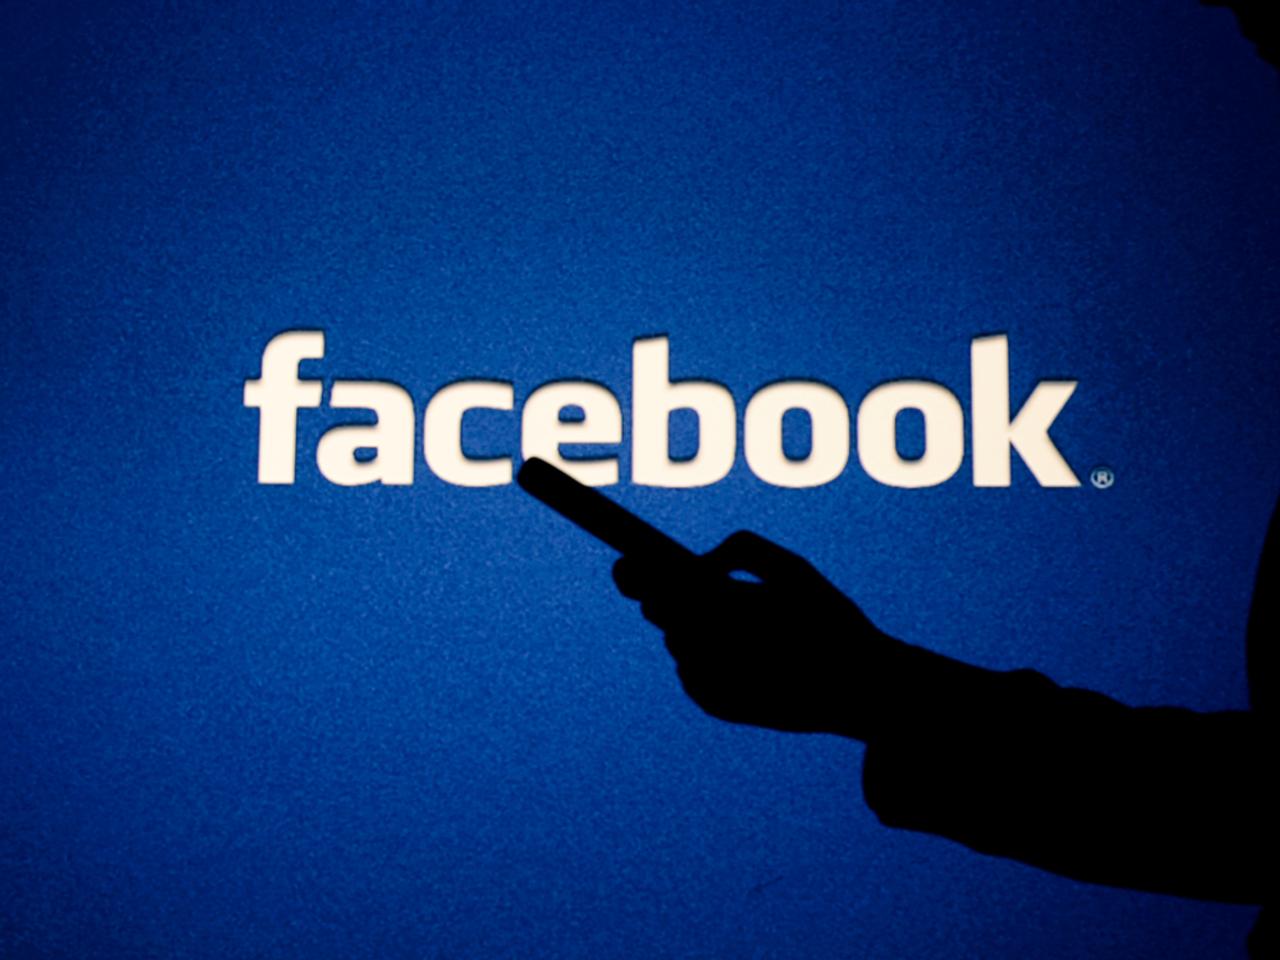 Facebookもデジタルアシスタント投入間近？ テスト中っぽい｢Aloha｣が発見される